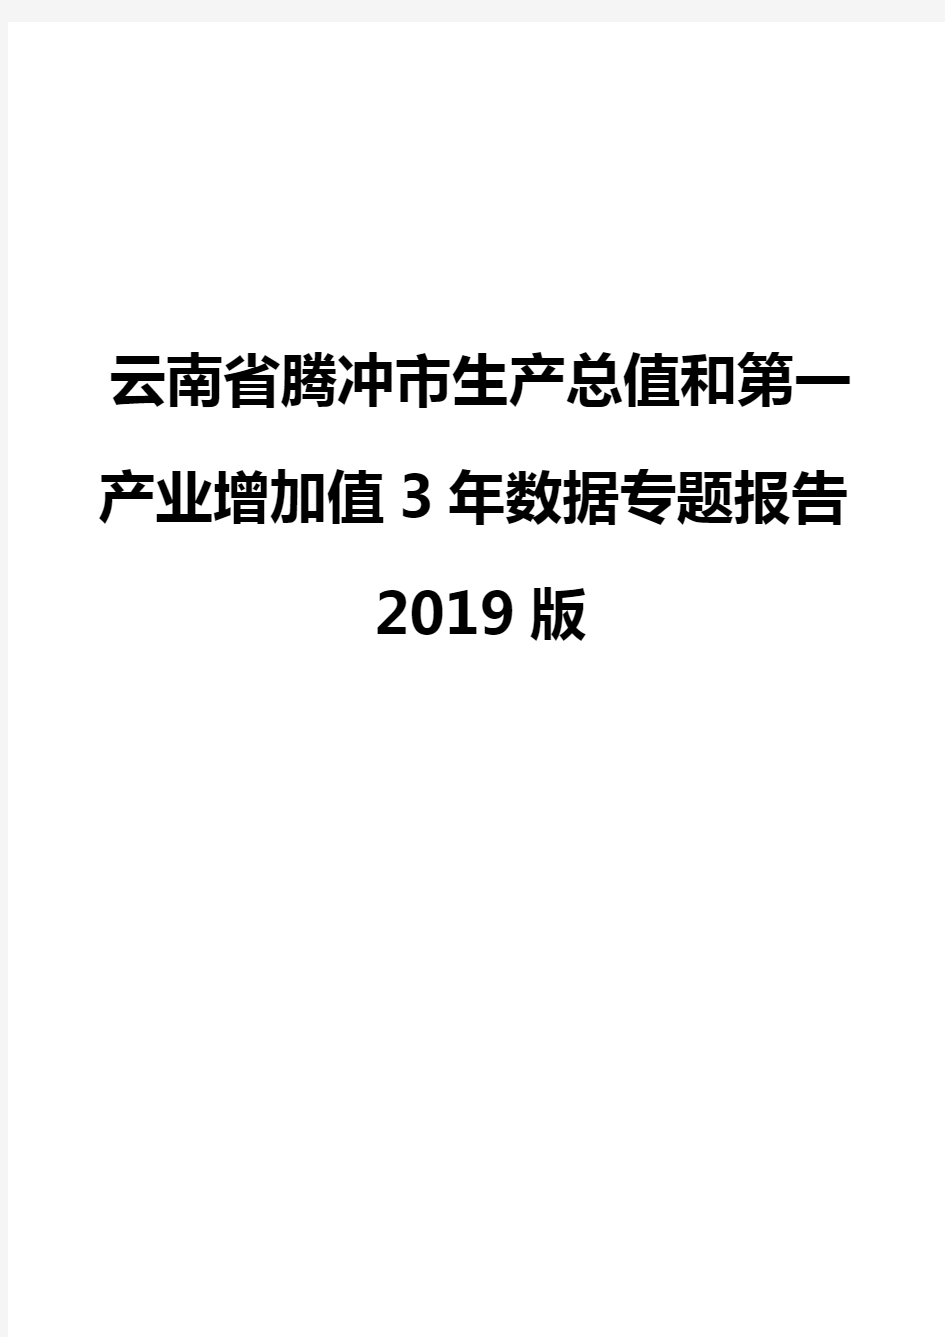 云南省腾冲市生产总值和第一产业增加值3年数据专题报告2019版